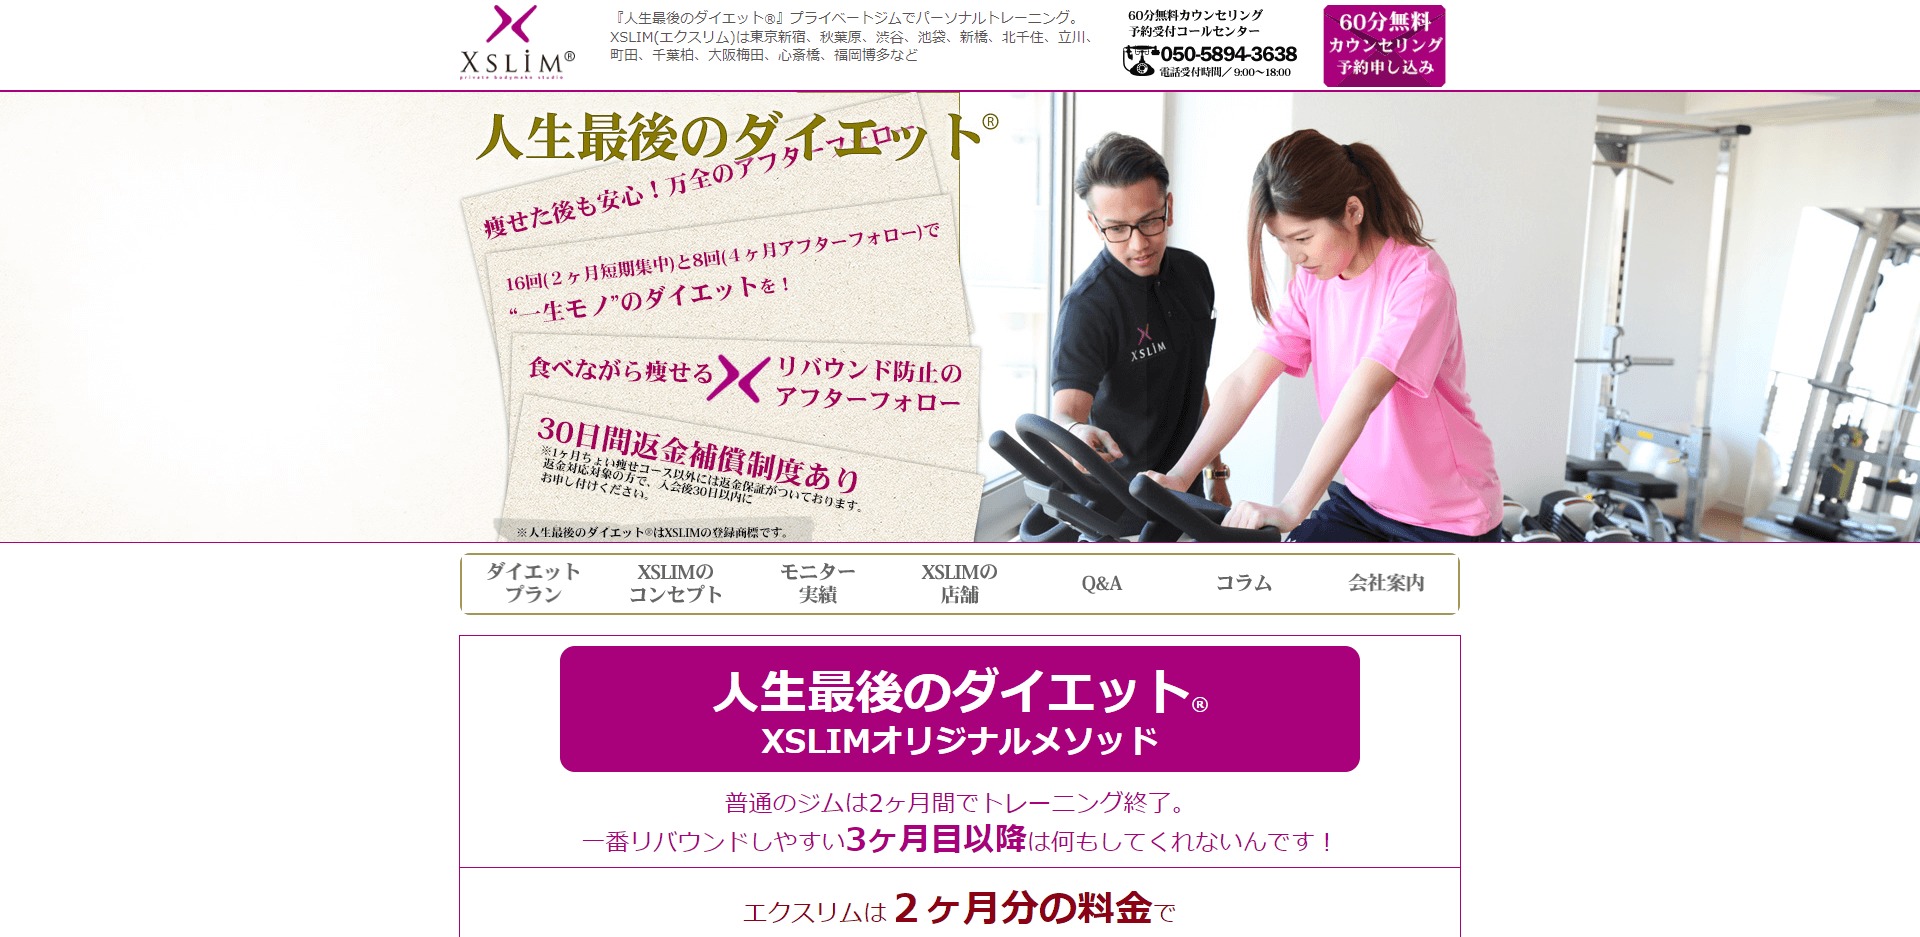 渋谷エリアでおすすめのパーソナルトレーニングジム「XSLIM（エクスリム）渋谷店